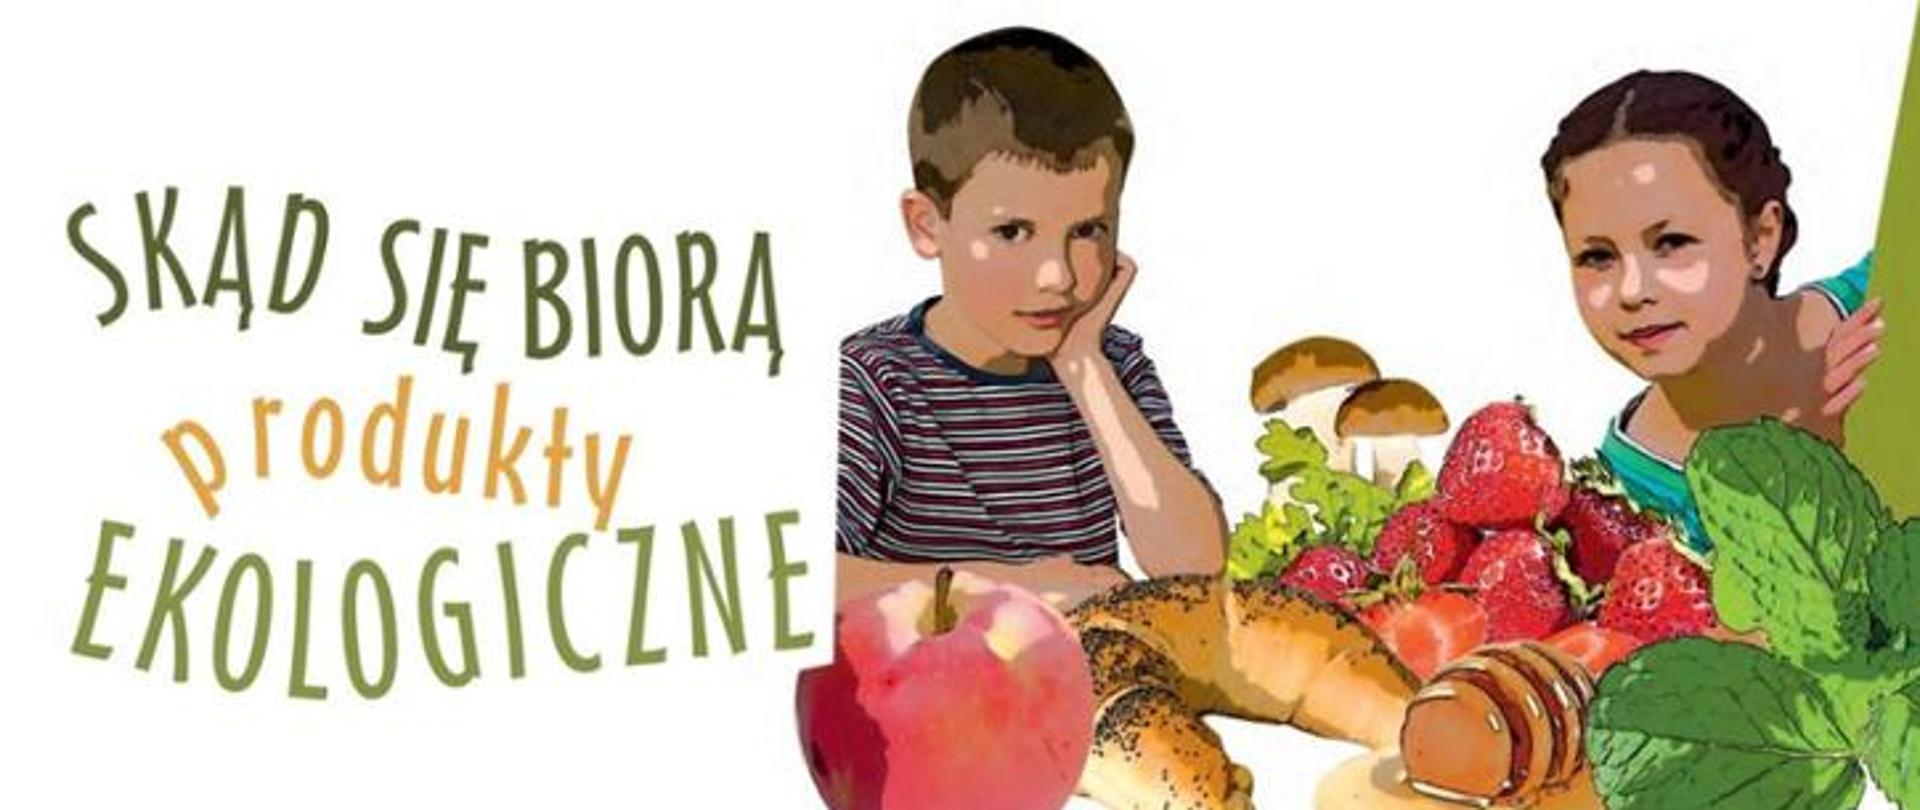 Grafika przedstawia z lewej strony obrazka chłopca podartego ręką oraz wychylającą się z prawej strony zza obrazka dziewczynkę. Na pierwszym planie znajdują się produkty żywnościowe: jabłko, rogal, miód, miętę truskawki oraz grzyby. Na obrazku koło chłopca widnieje napis: Skąd się biorą produkty ekologiczne.